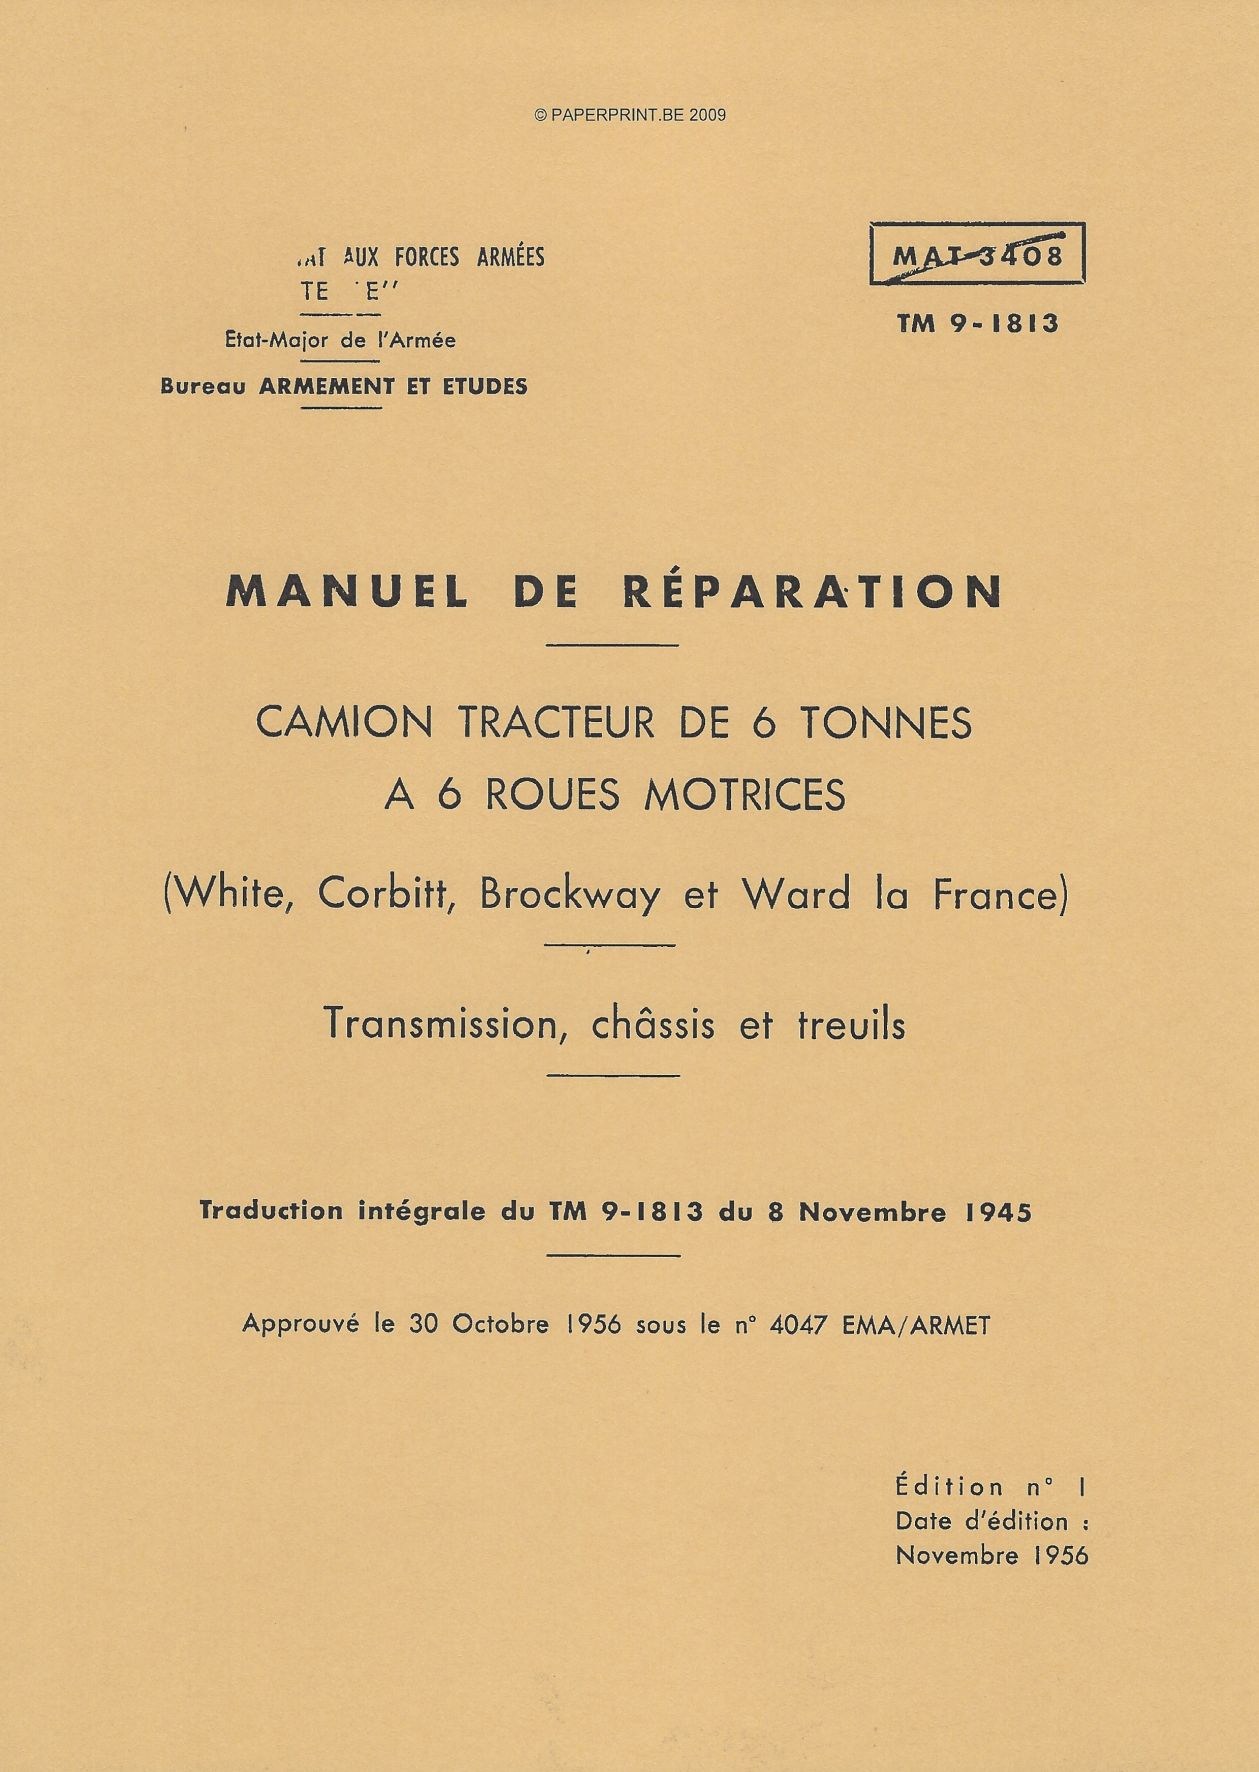 TM 9-1813 FR CAMION TRACTEUR DE 6 TONNES A 6 ROUES MOTRICES (WHITE, CORBITT, BROCKWAY ET WARD LA FRANCE) TRANSMISSION, CHASSIS E